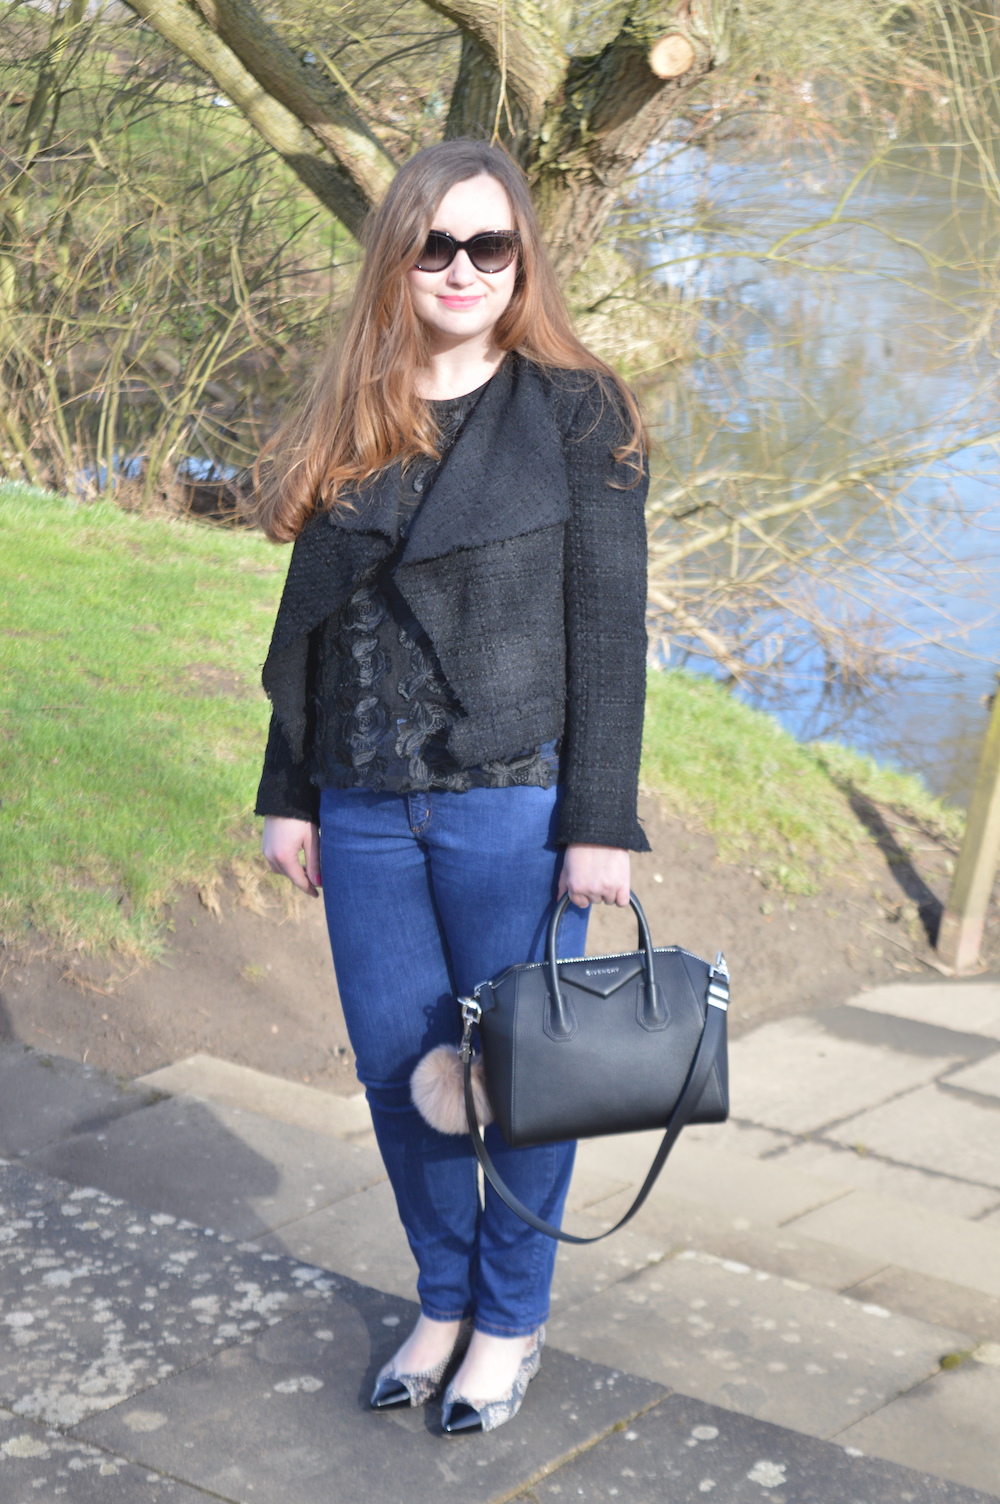 UK style blogger